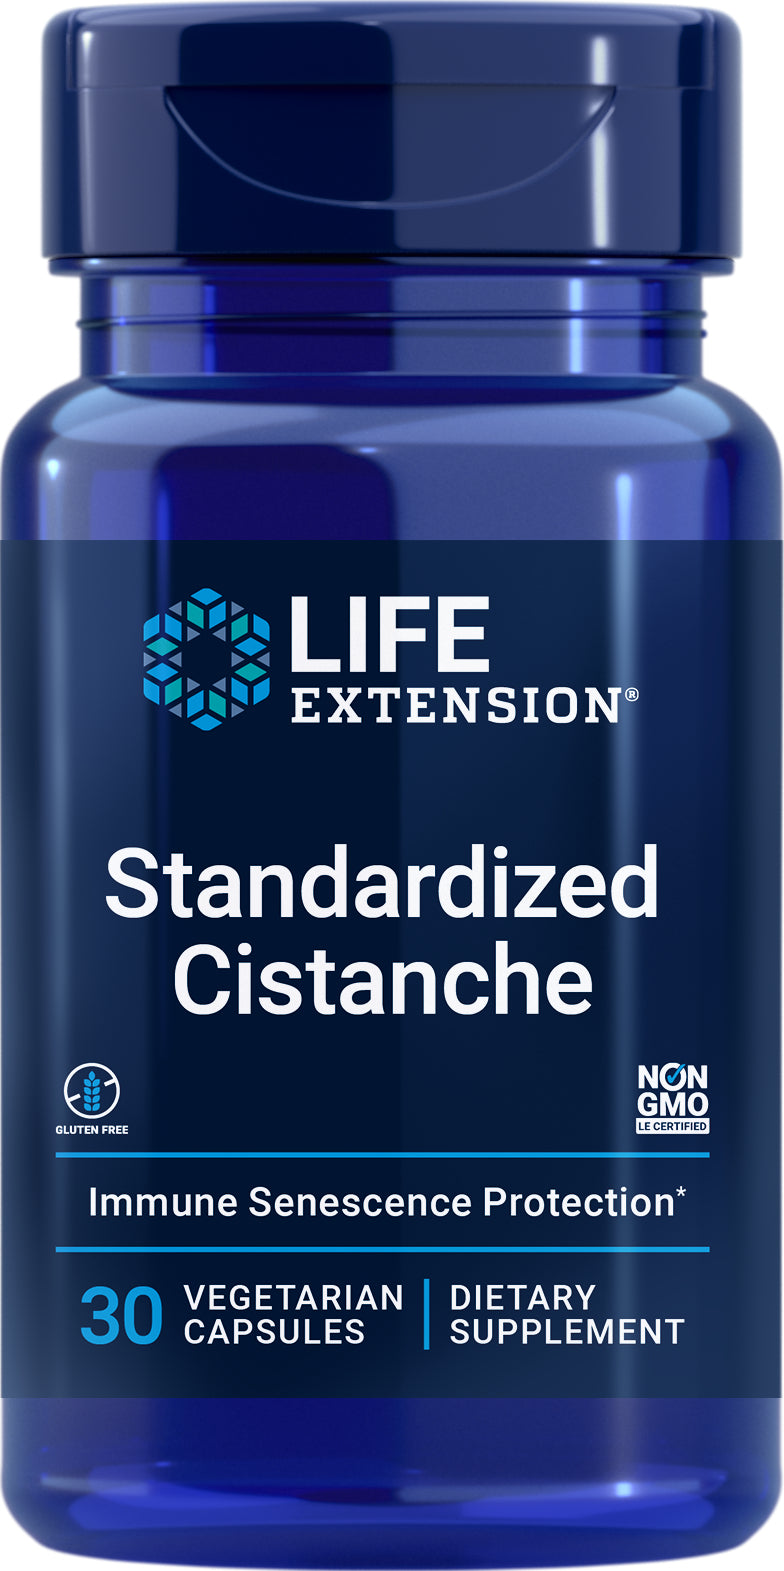 Standardized Cistanche 30 Veg Caps by Life Extension